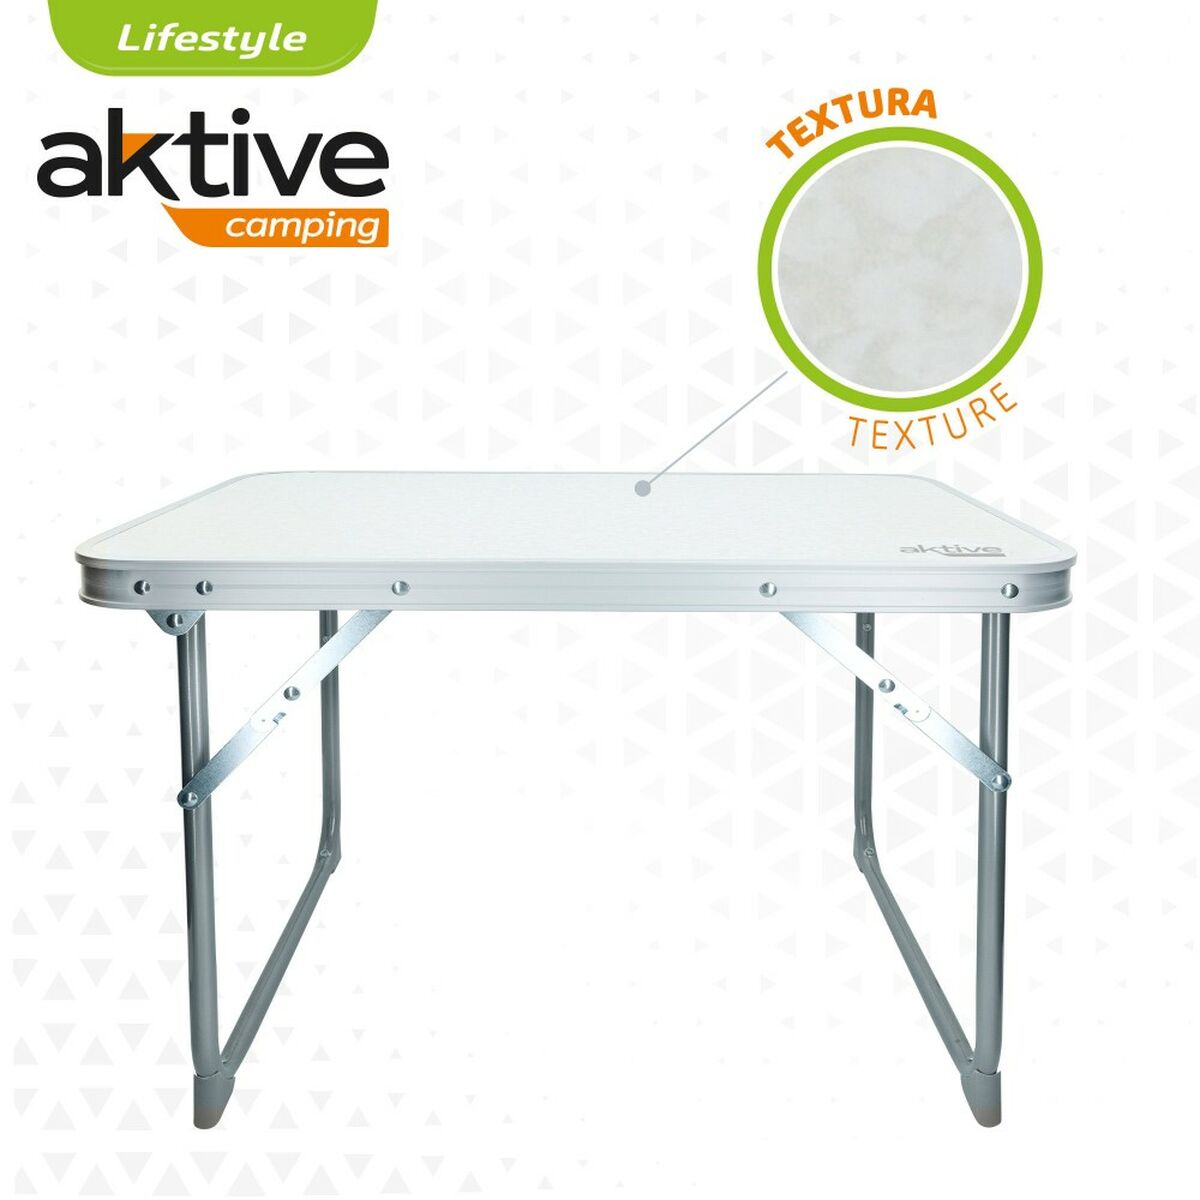 Table Klapptisch Aktive Weiß 60 x 40 x 40 cm (4 Stück)